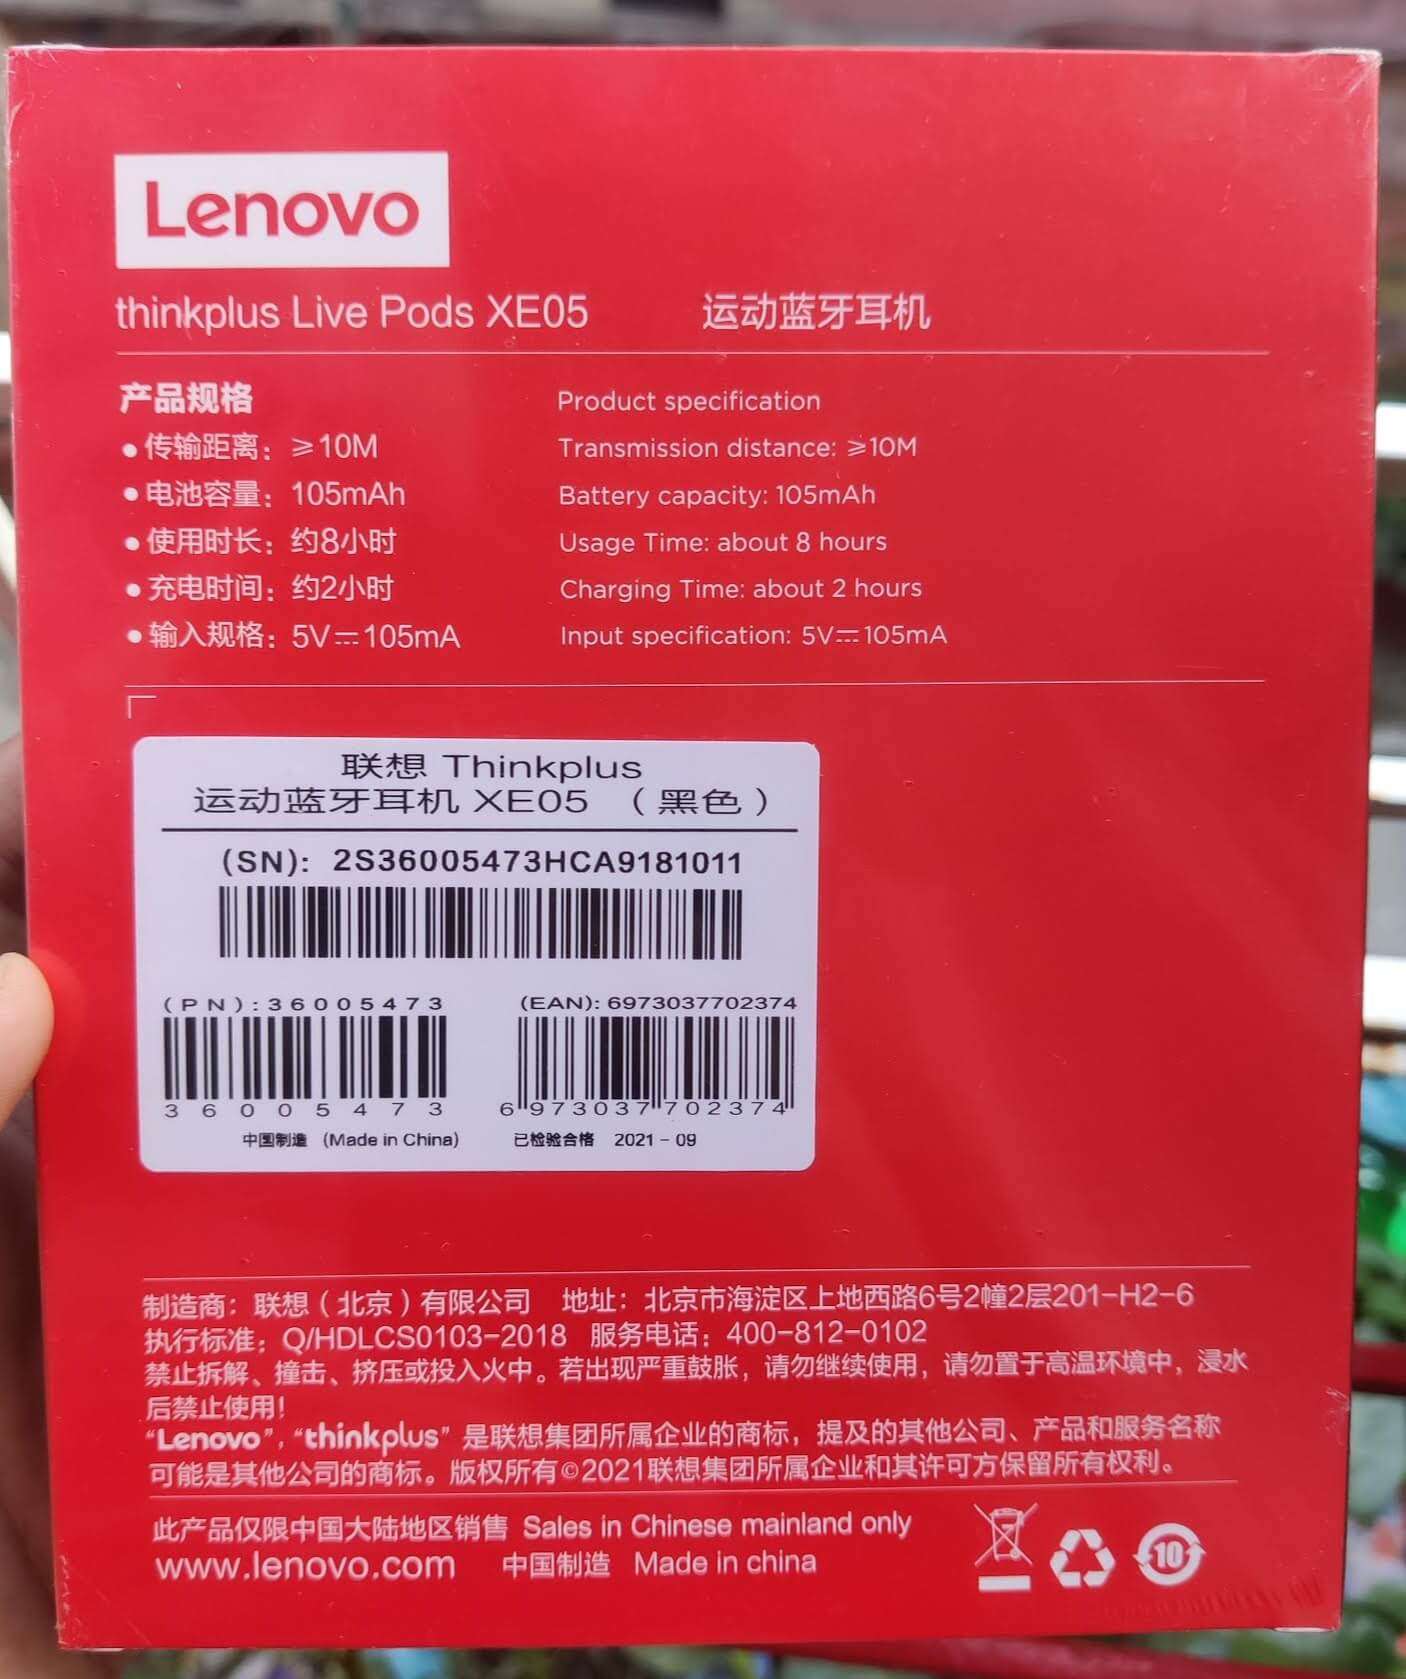 Original Lenovo XE05 Bluetooth Neckband Headphone